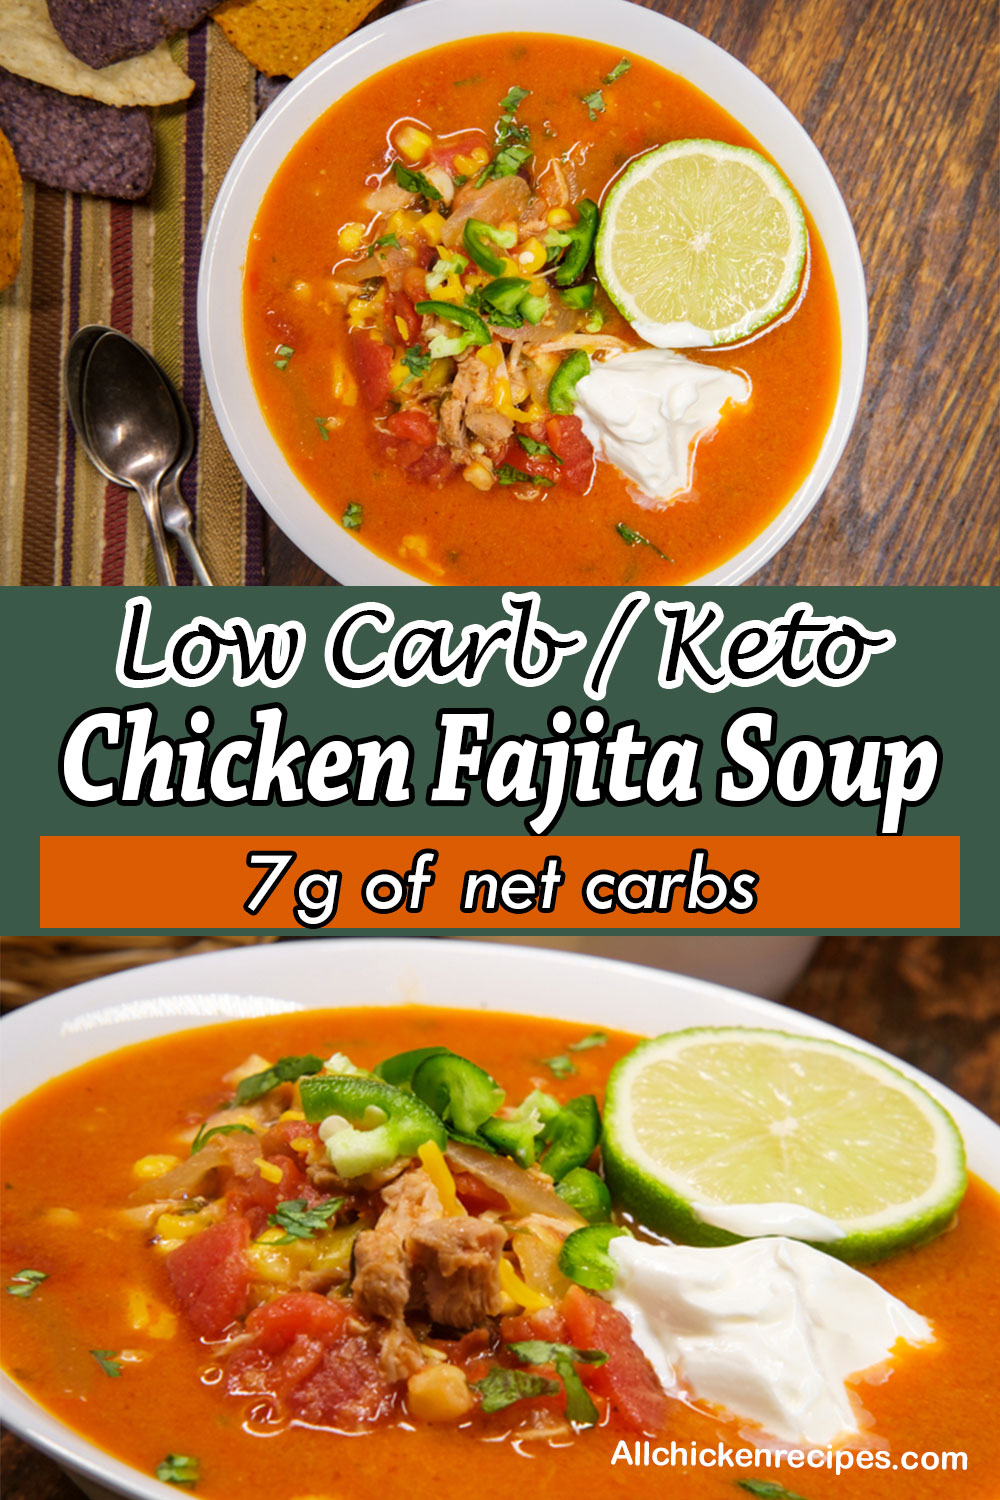 Low Carb Keto Chicken Fajita Soup